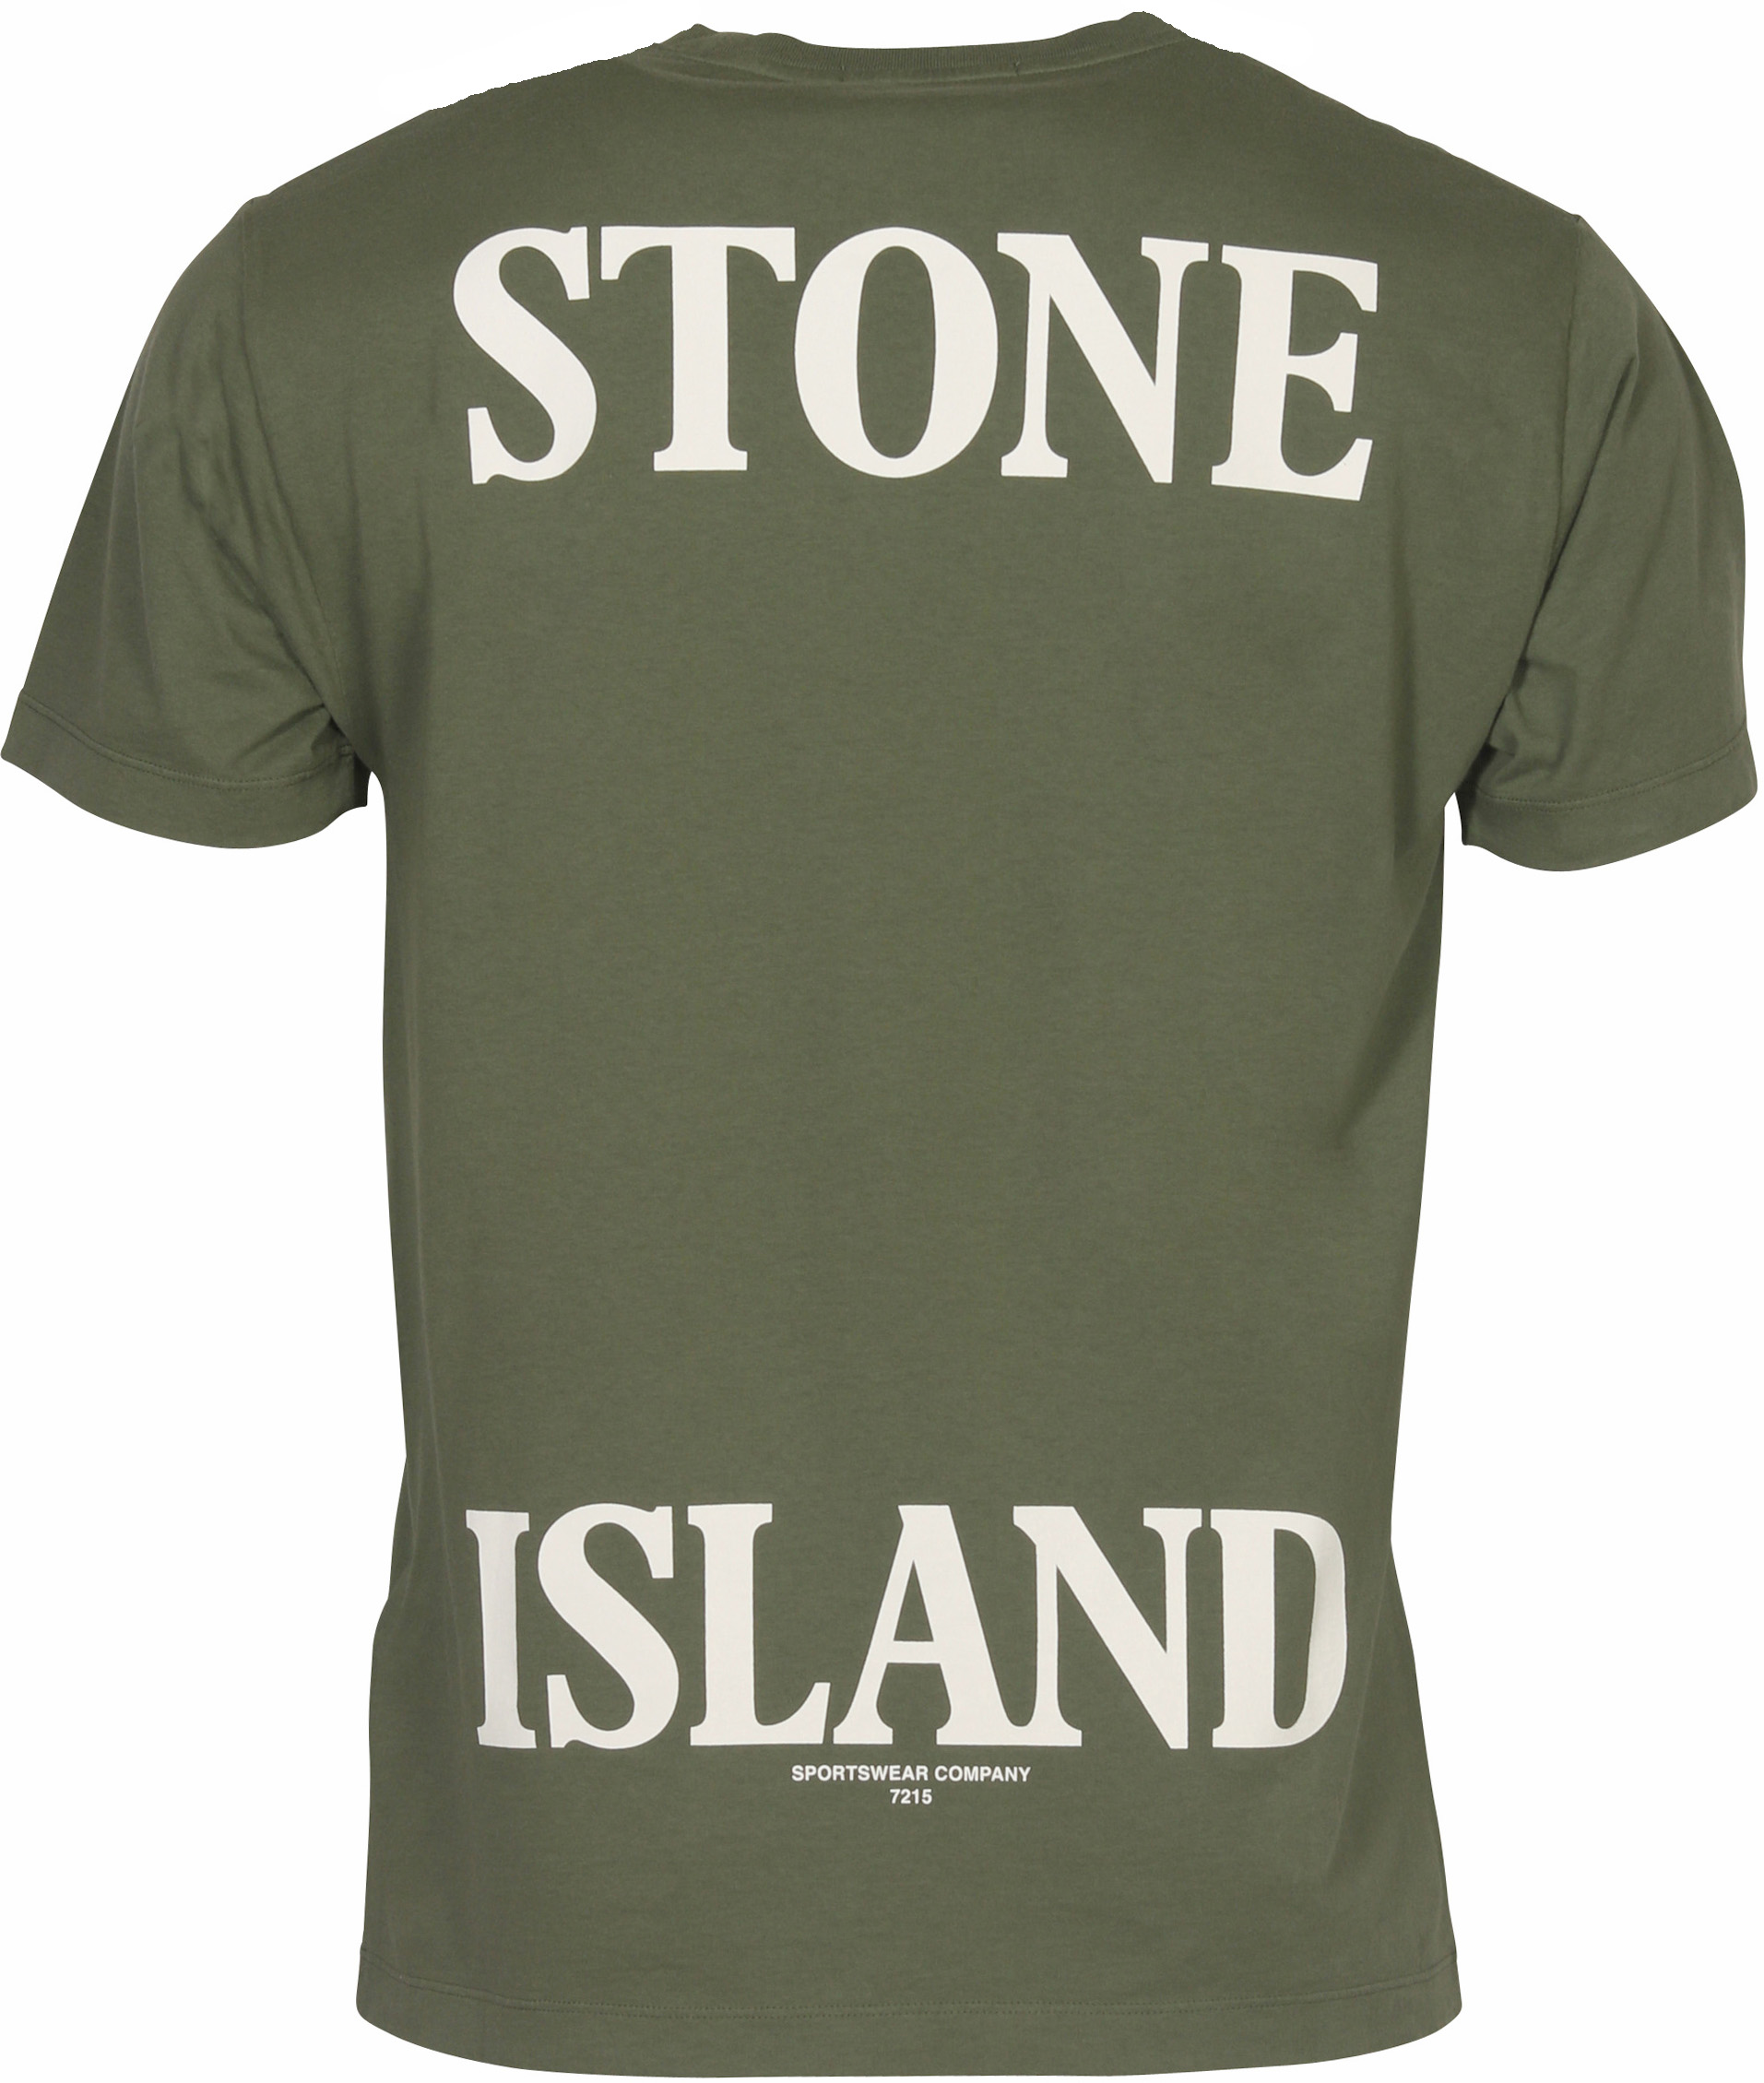 Stone Island T-Shirt Olive Stitched L